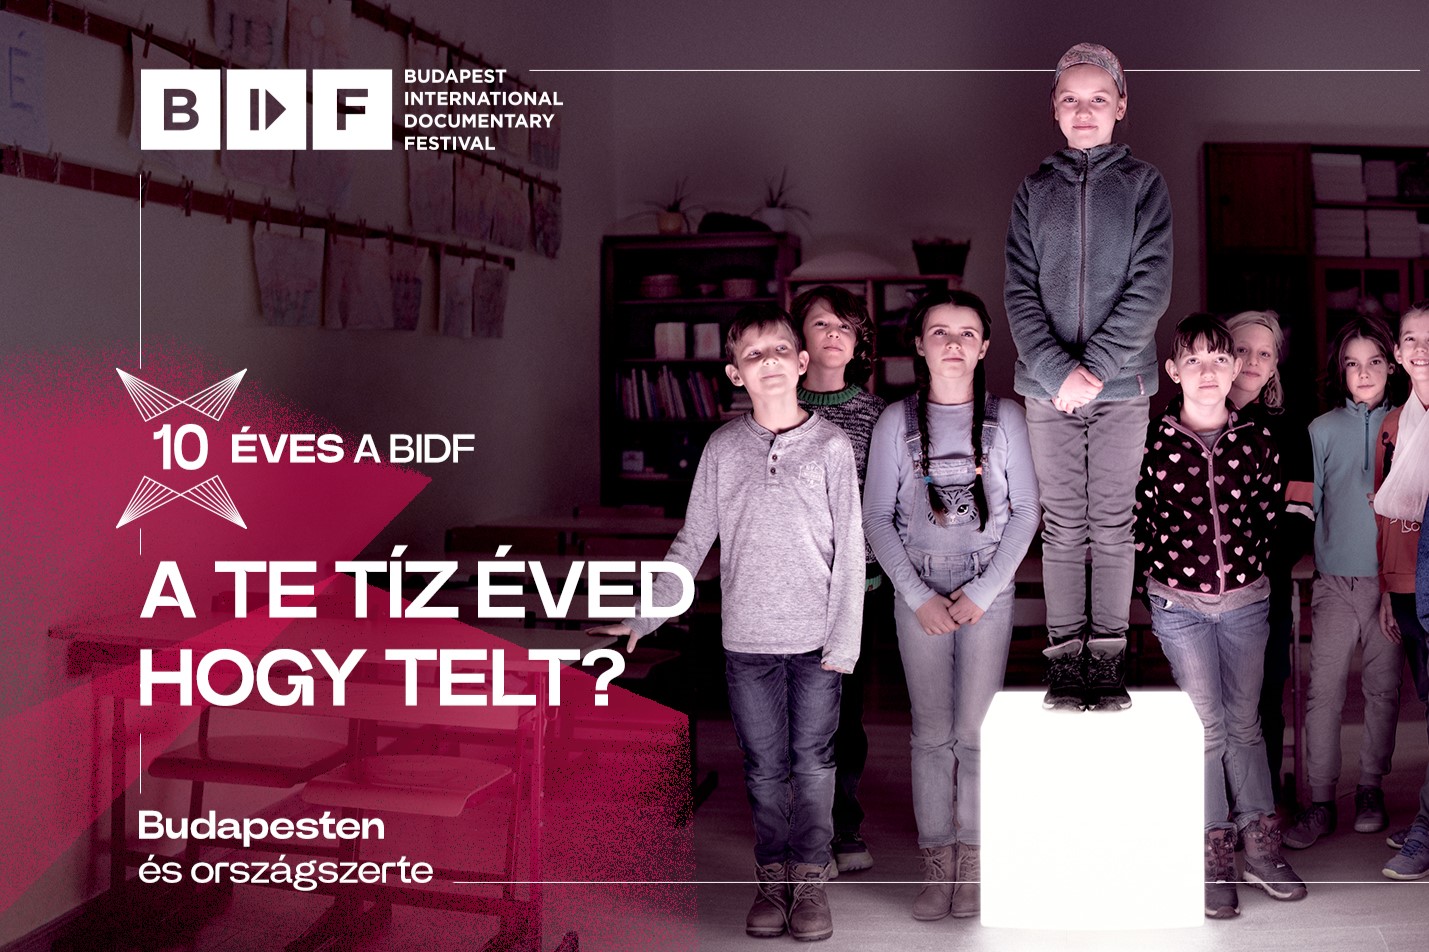 Januárban ismét érkezik az immár 10 éves Budapest Nemzetközi Dokumentumfilm Fesztivál